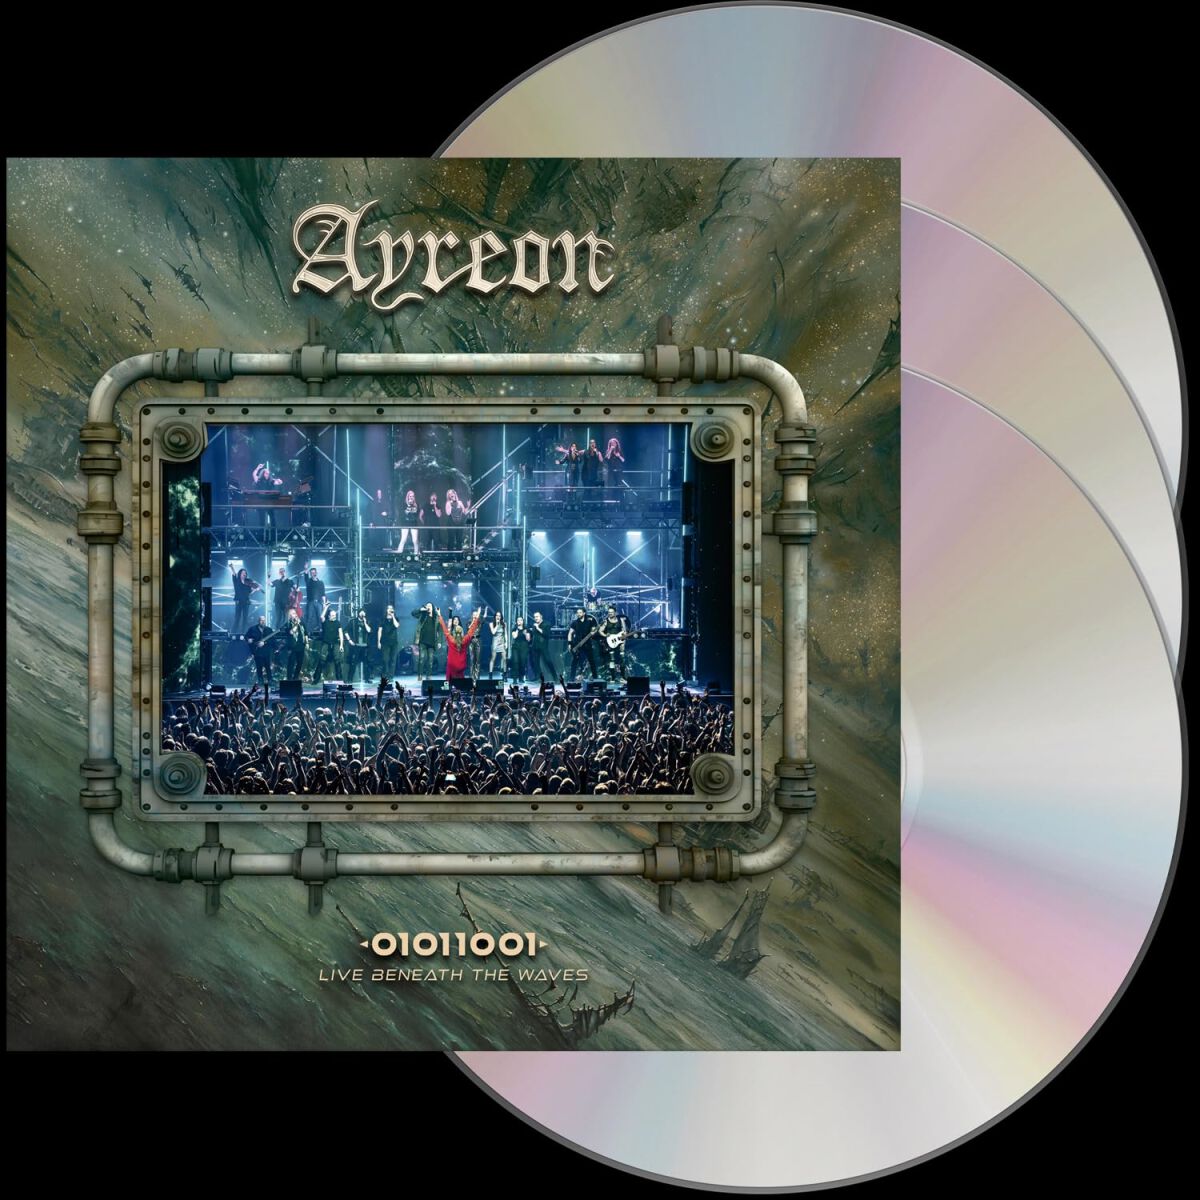 Ayreon 01011001 - Live beneath the waves DVD multicolor von Ayreon